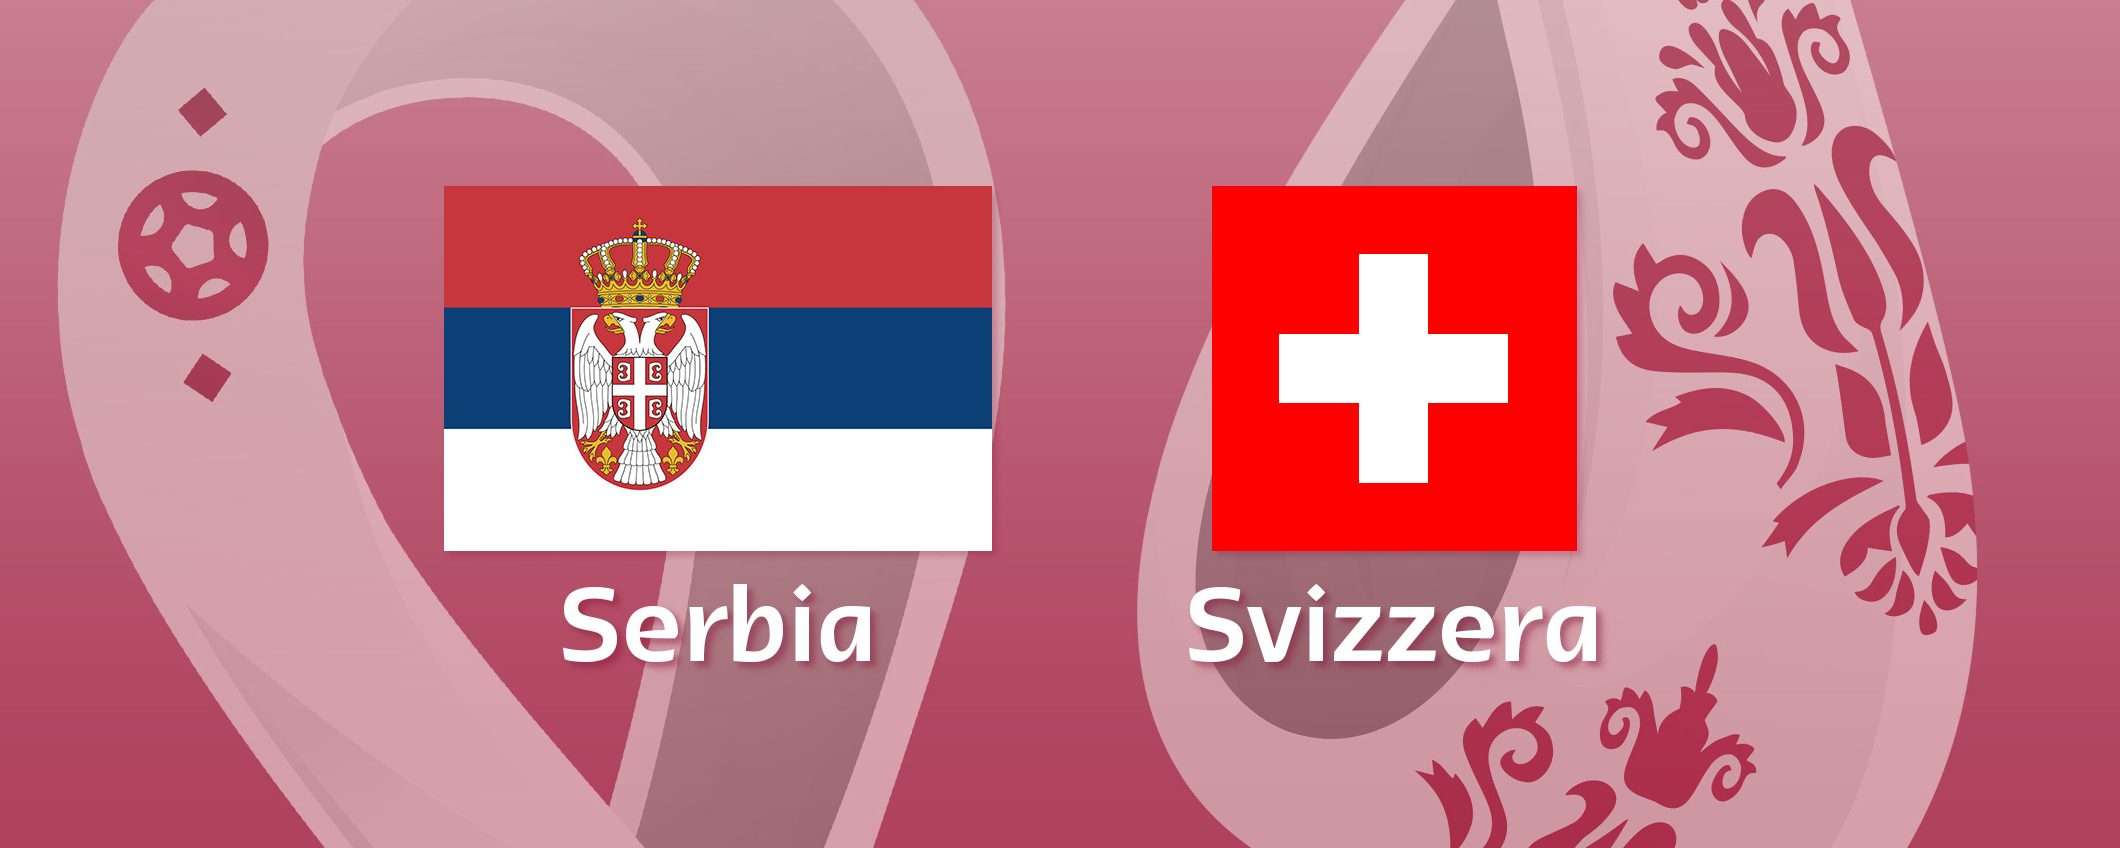 Come vedere Serbia-Svizzera in streaming